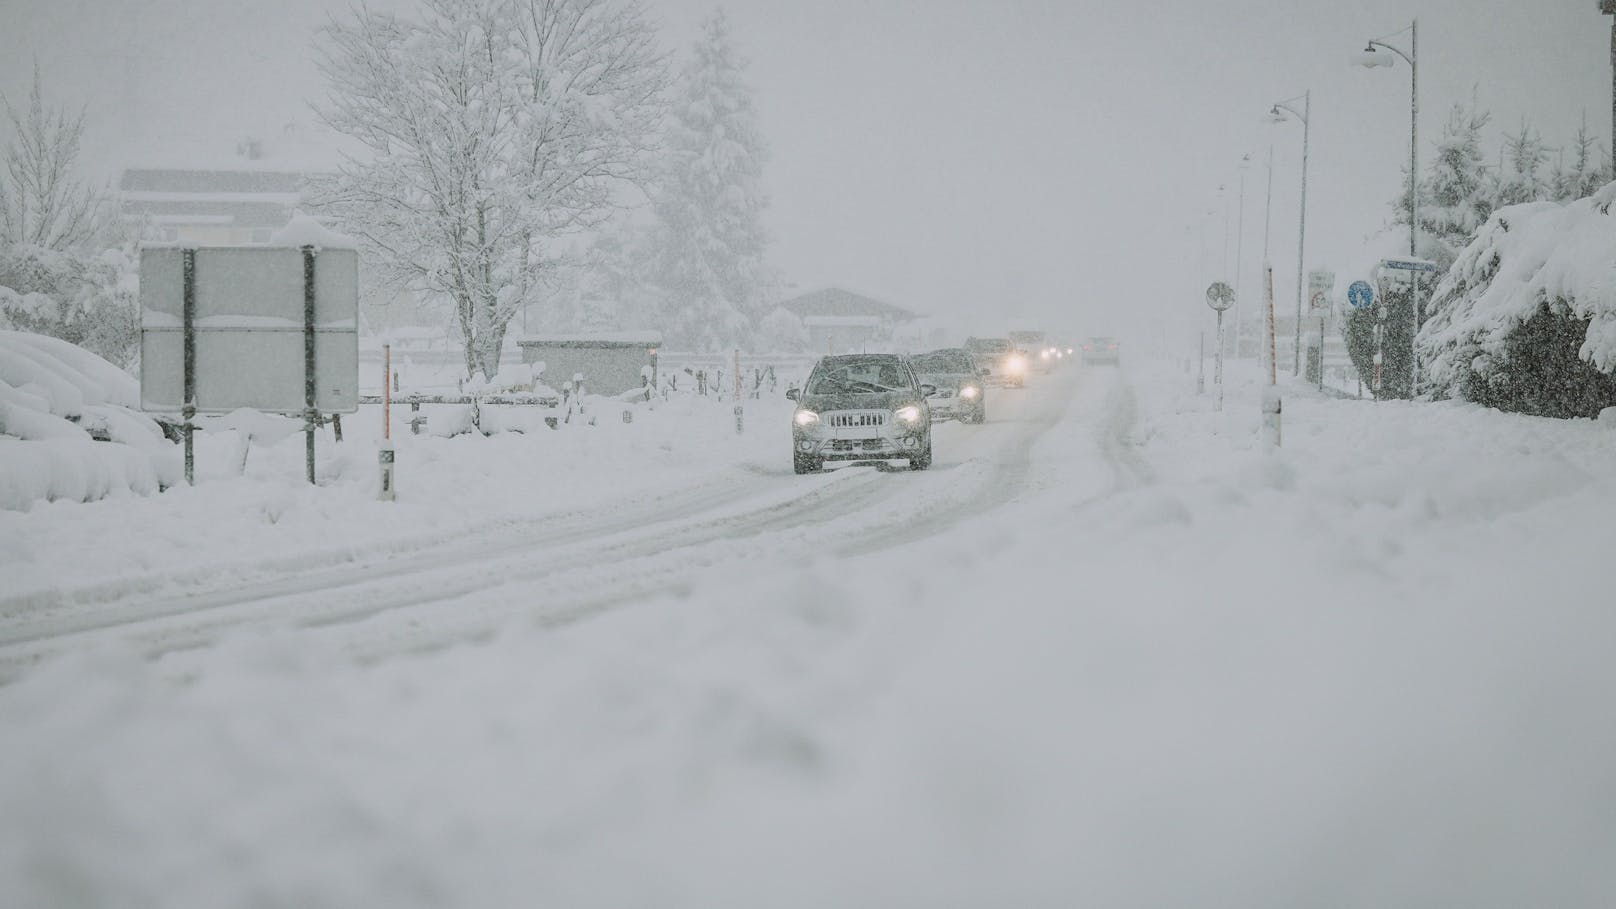 "In weniger als 12 Stunden" – halber Meter Schnee kommt